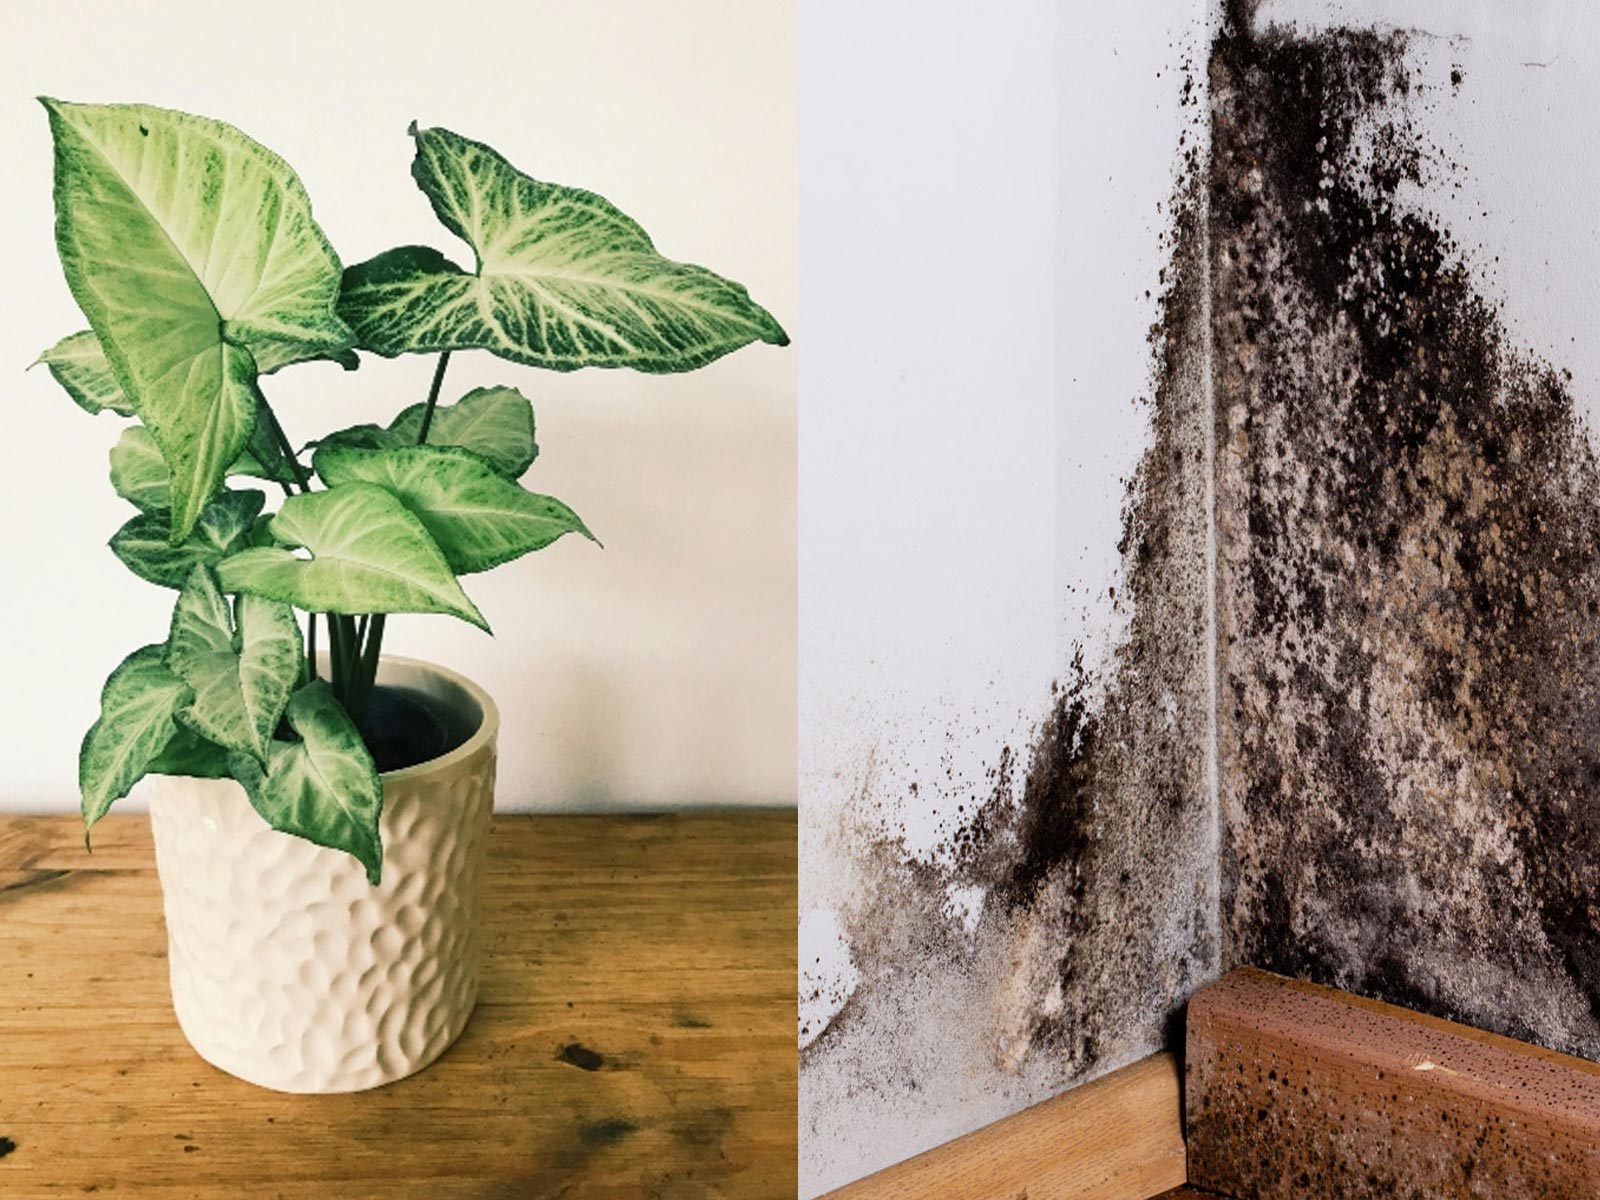 5 φυτά που εμποδίζουν την μούχλα στο σπίτι